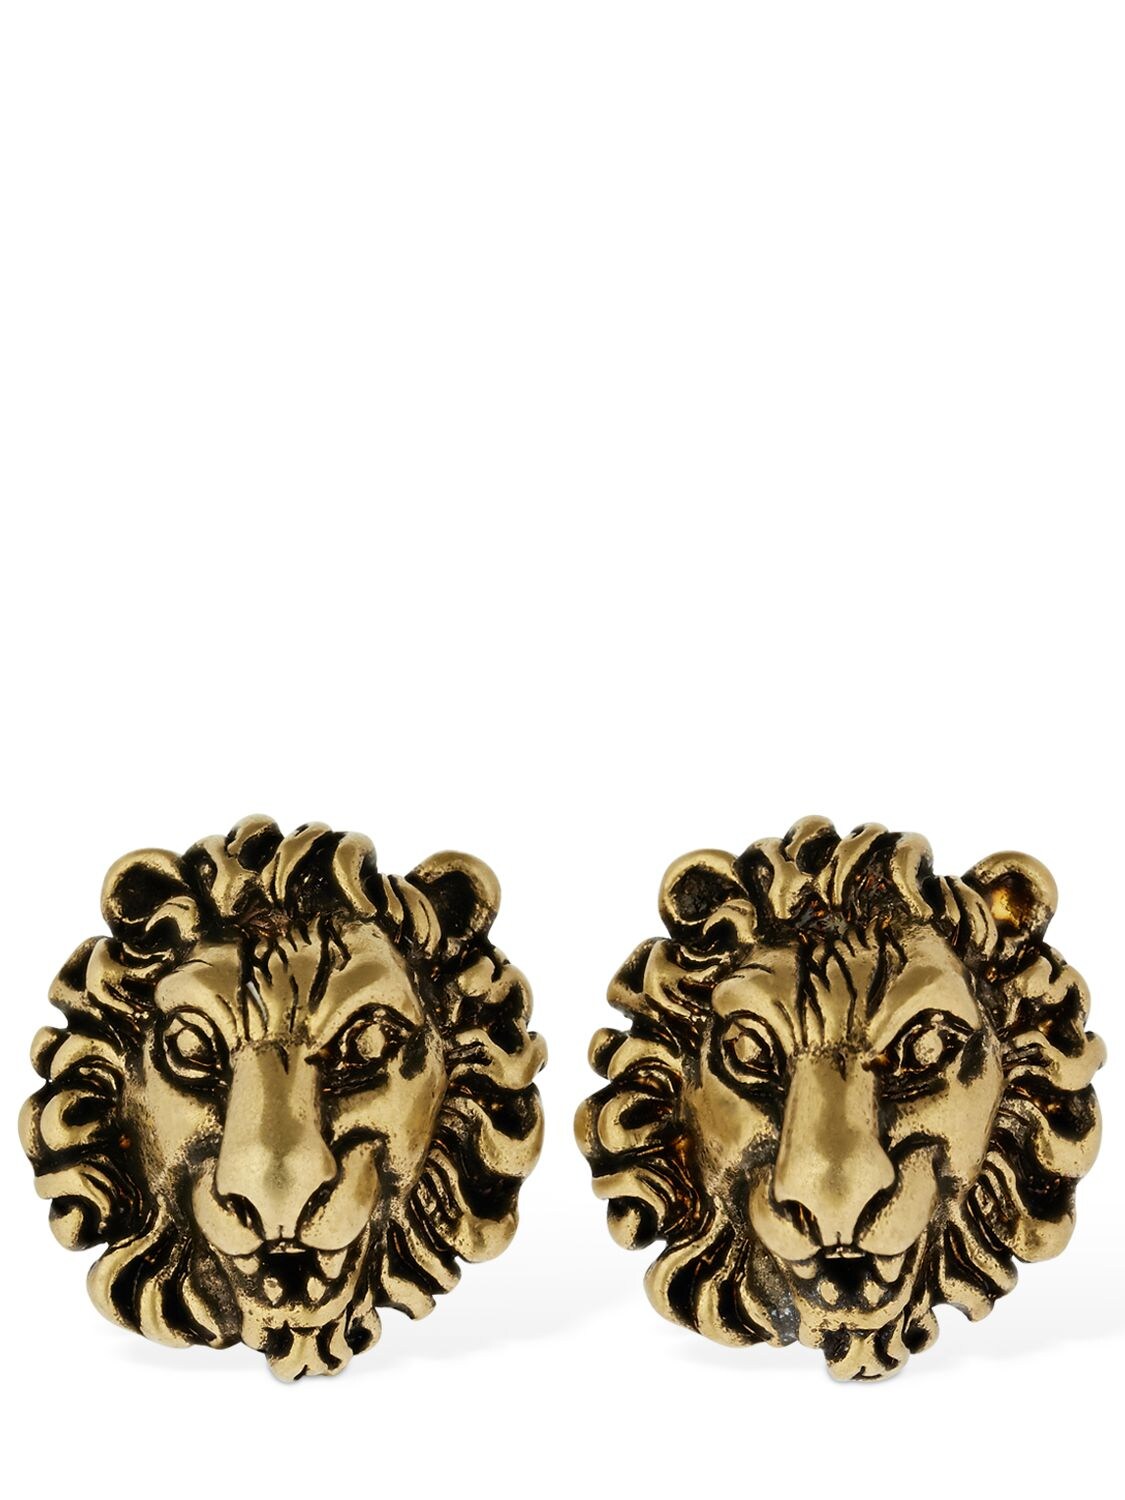 gucci lion cufflinks